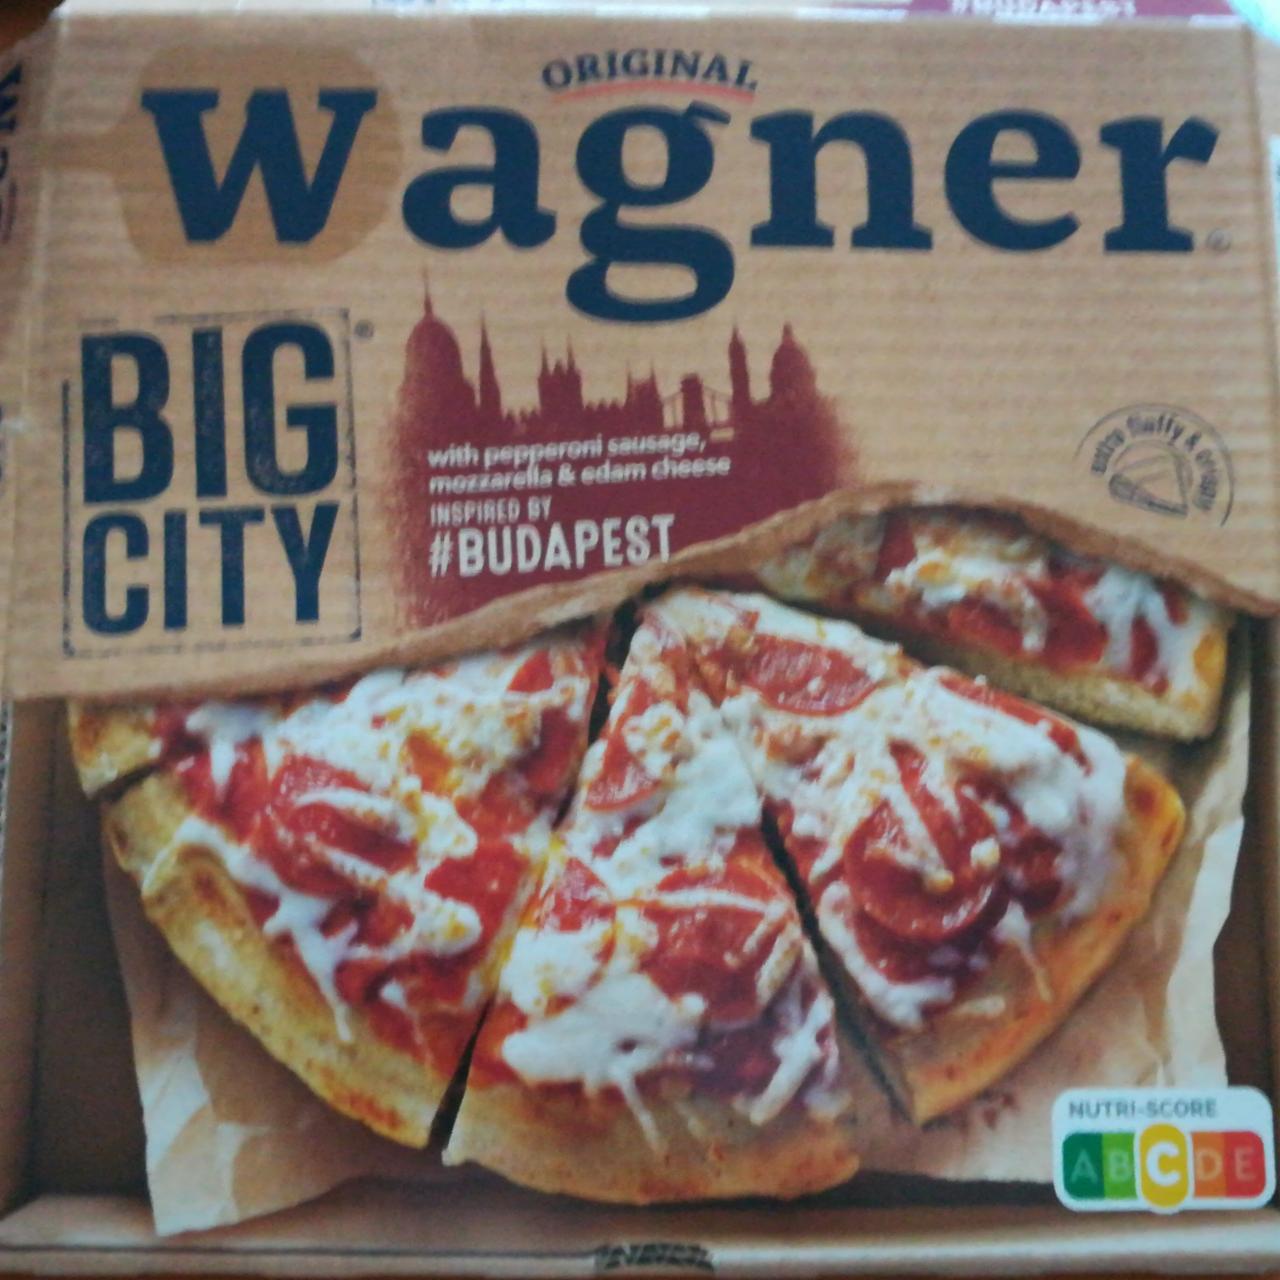 Fotografie - Big City Budapešť Original Wagner